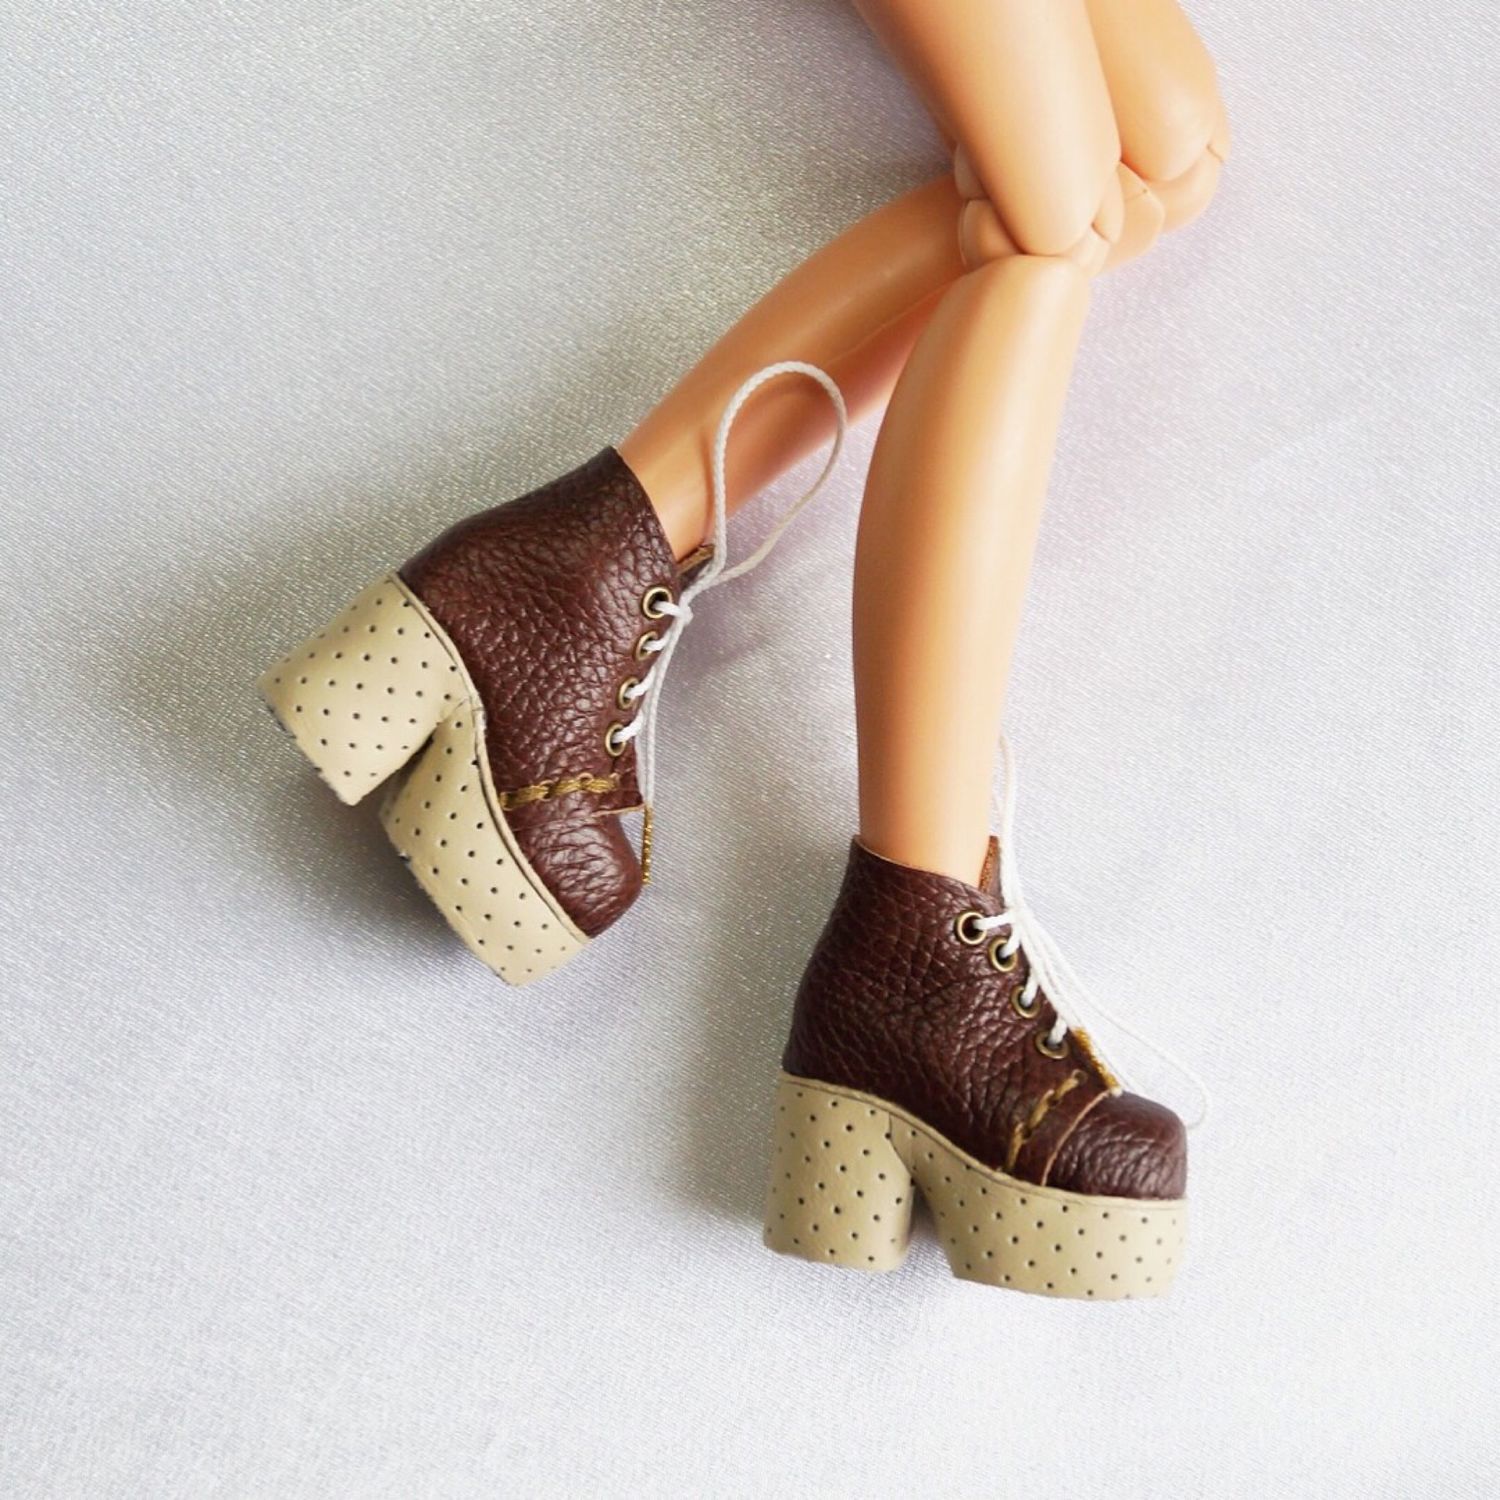 Обувь куклы